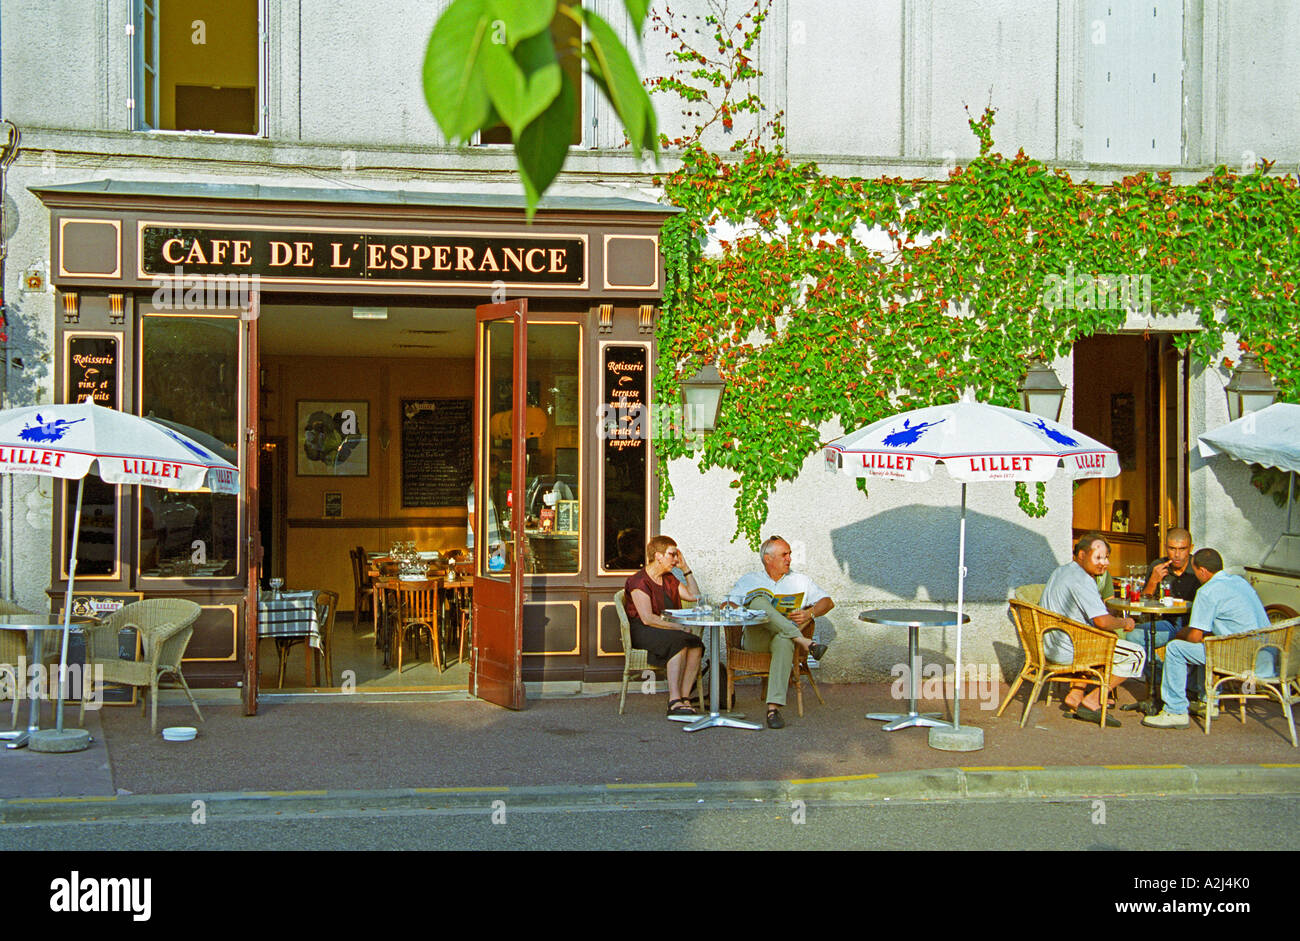 Café de l'Esperance en Bouliac en el sol de la tarde. Café tradicional  típica francesa con alguien sentado en la terraza bebiendo vino, cerveza,  café. Sol sombrillas sombrilla con texto sombreado Lillet.